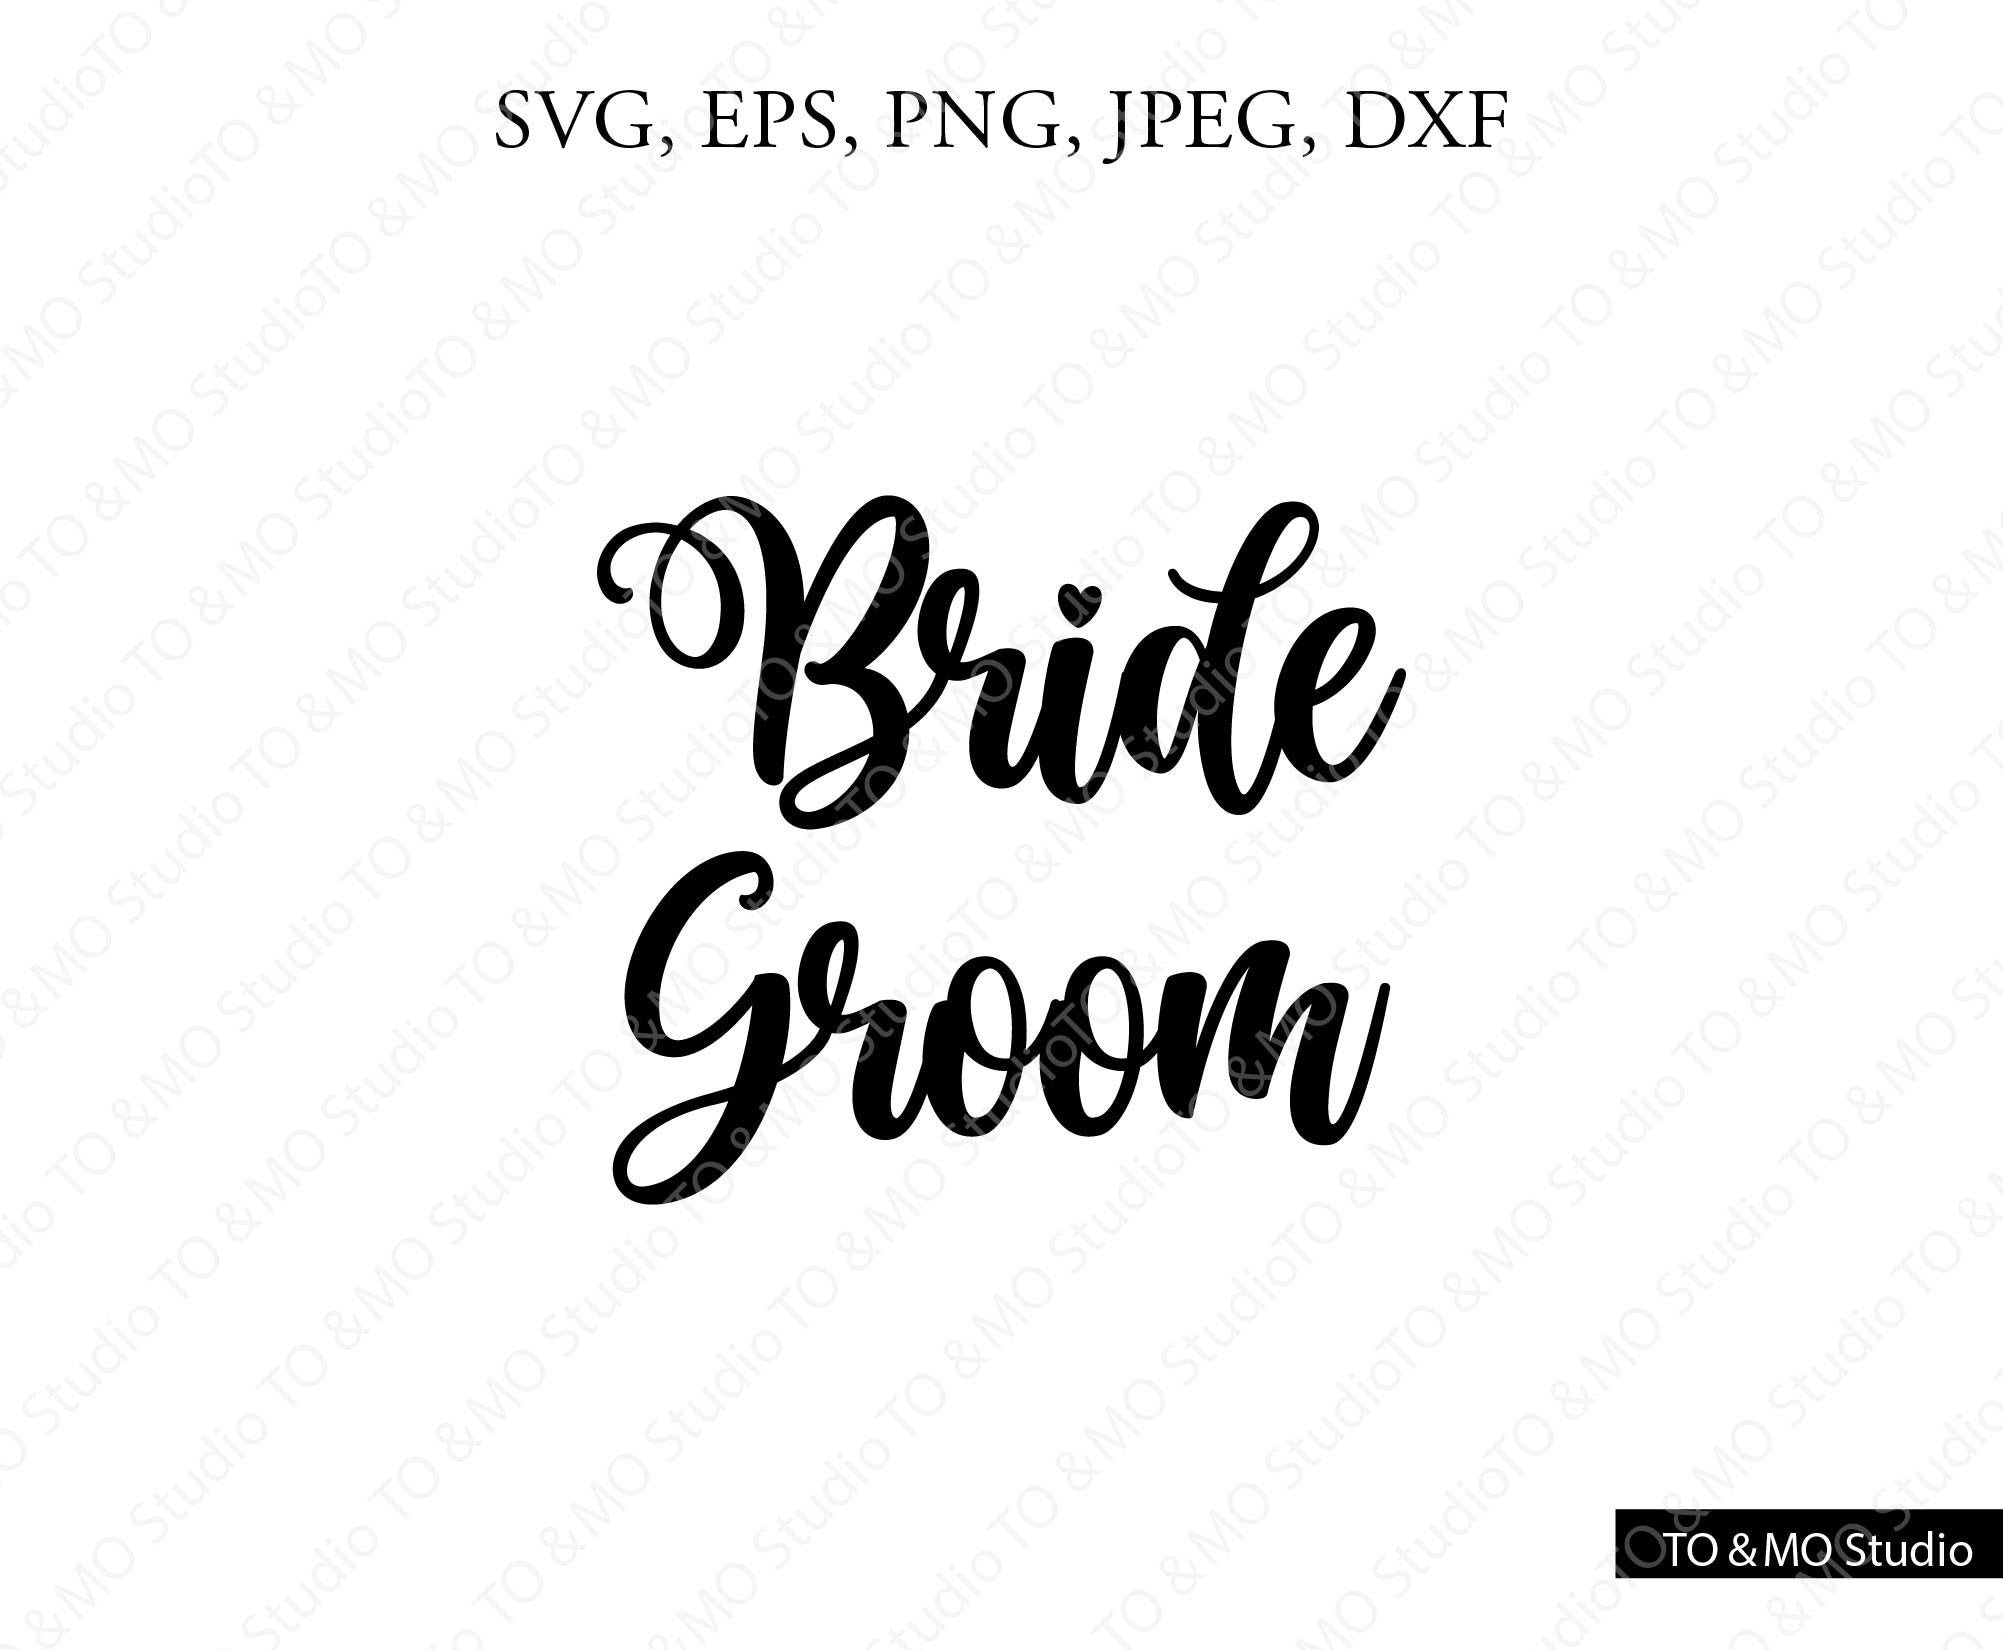 Mother Of The Groom svg Groom svg file Bride svg Groom SVG Wedding SVG Groom svg Bride and Groom SVG